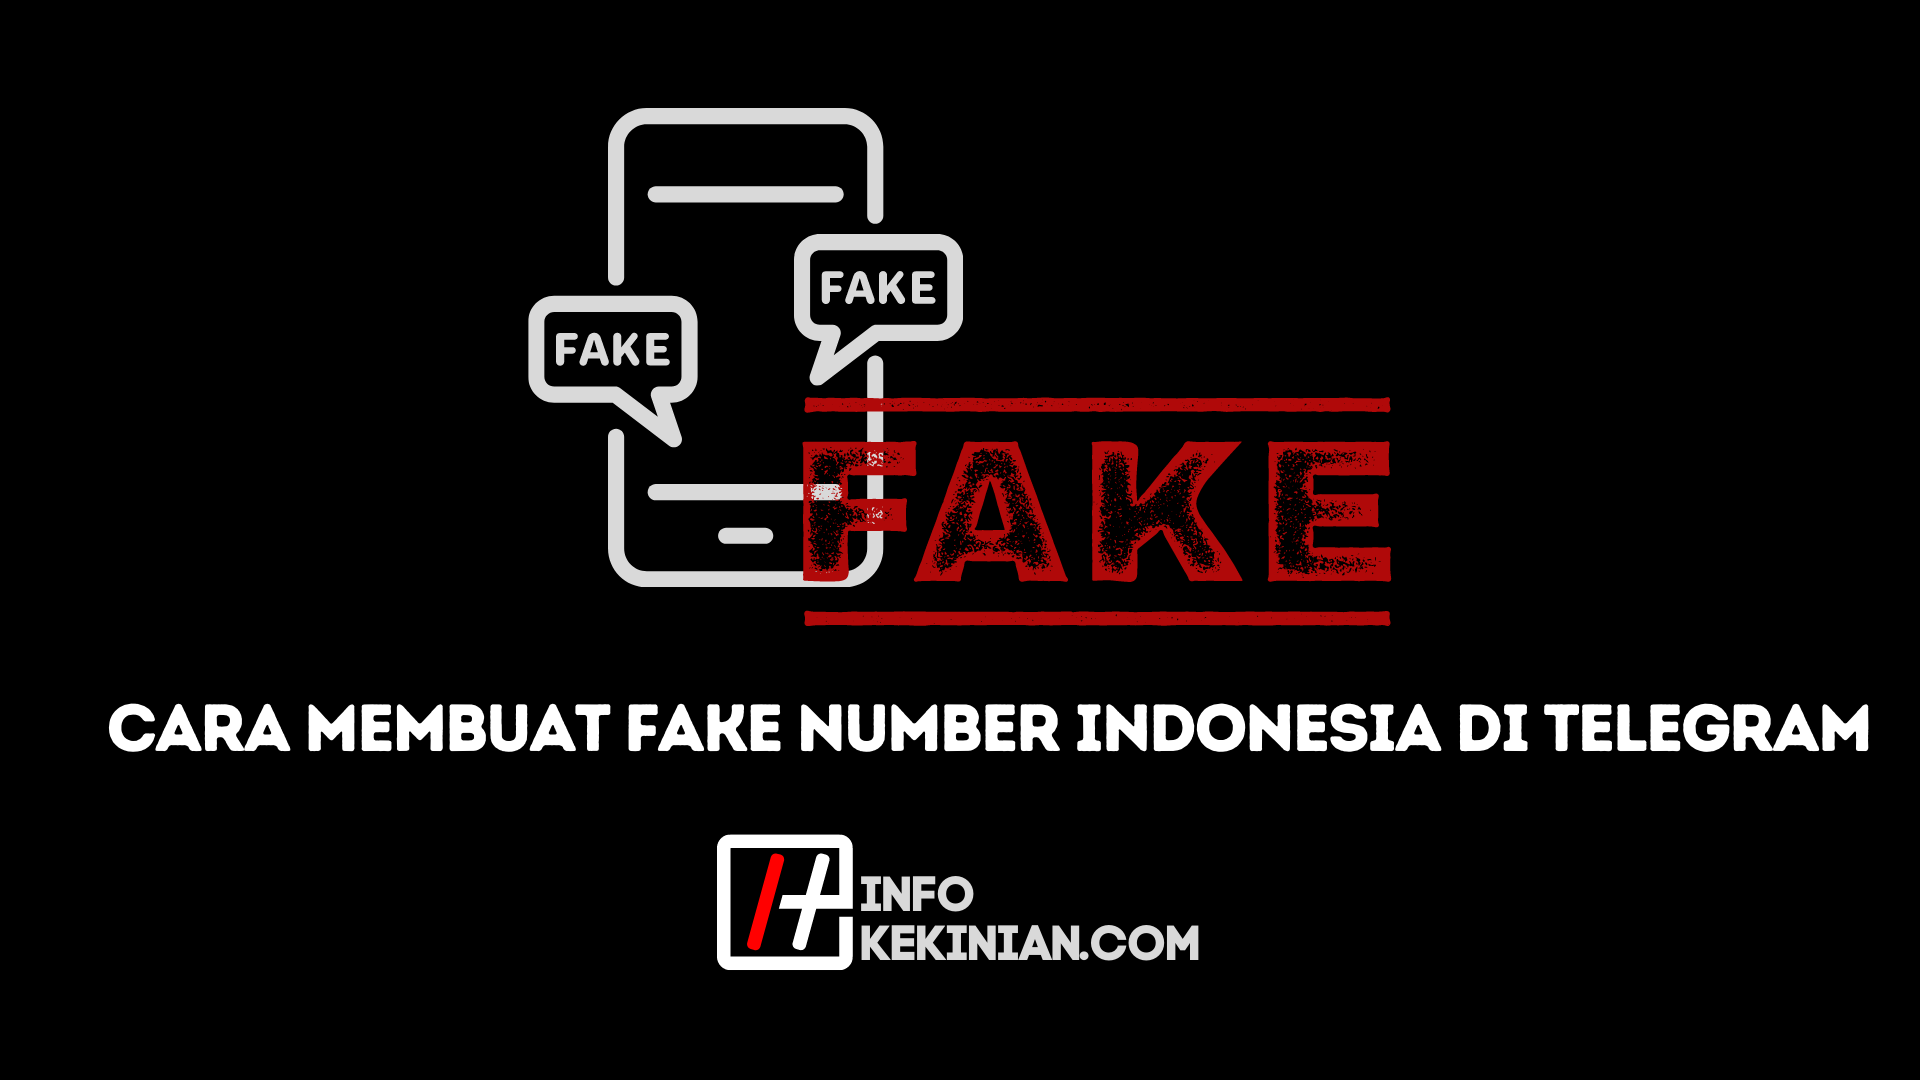 Tentang Fake Number Indonesia